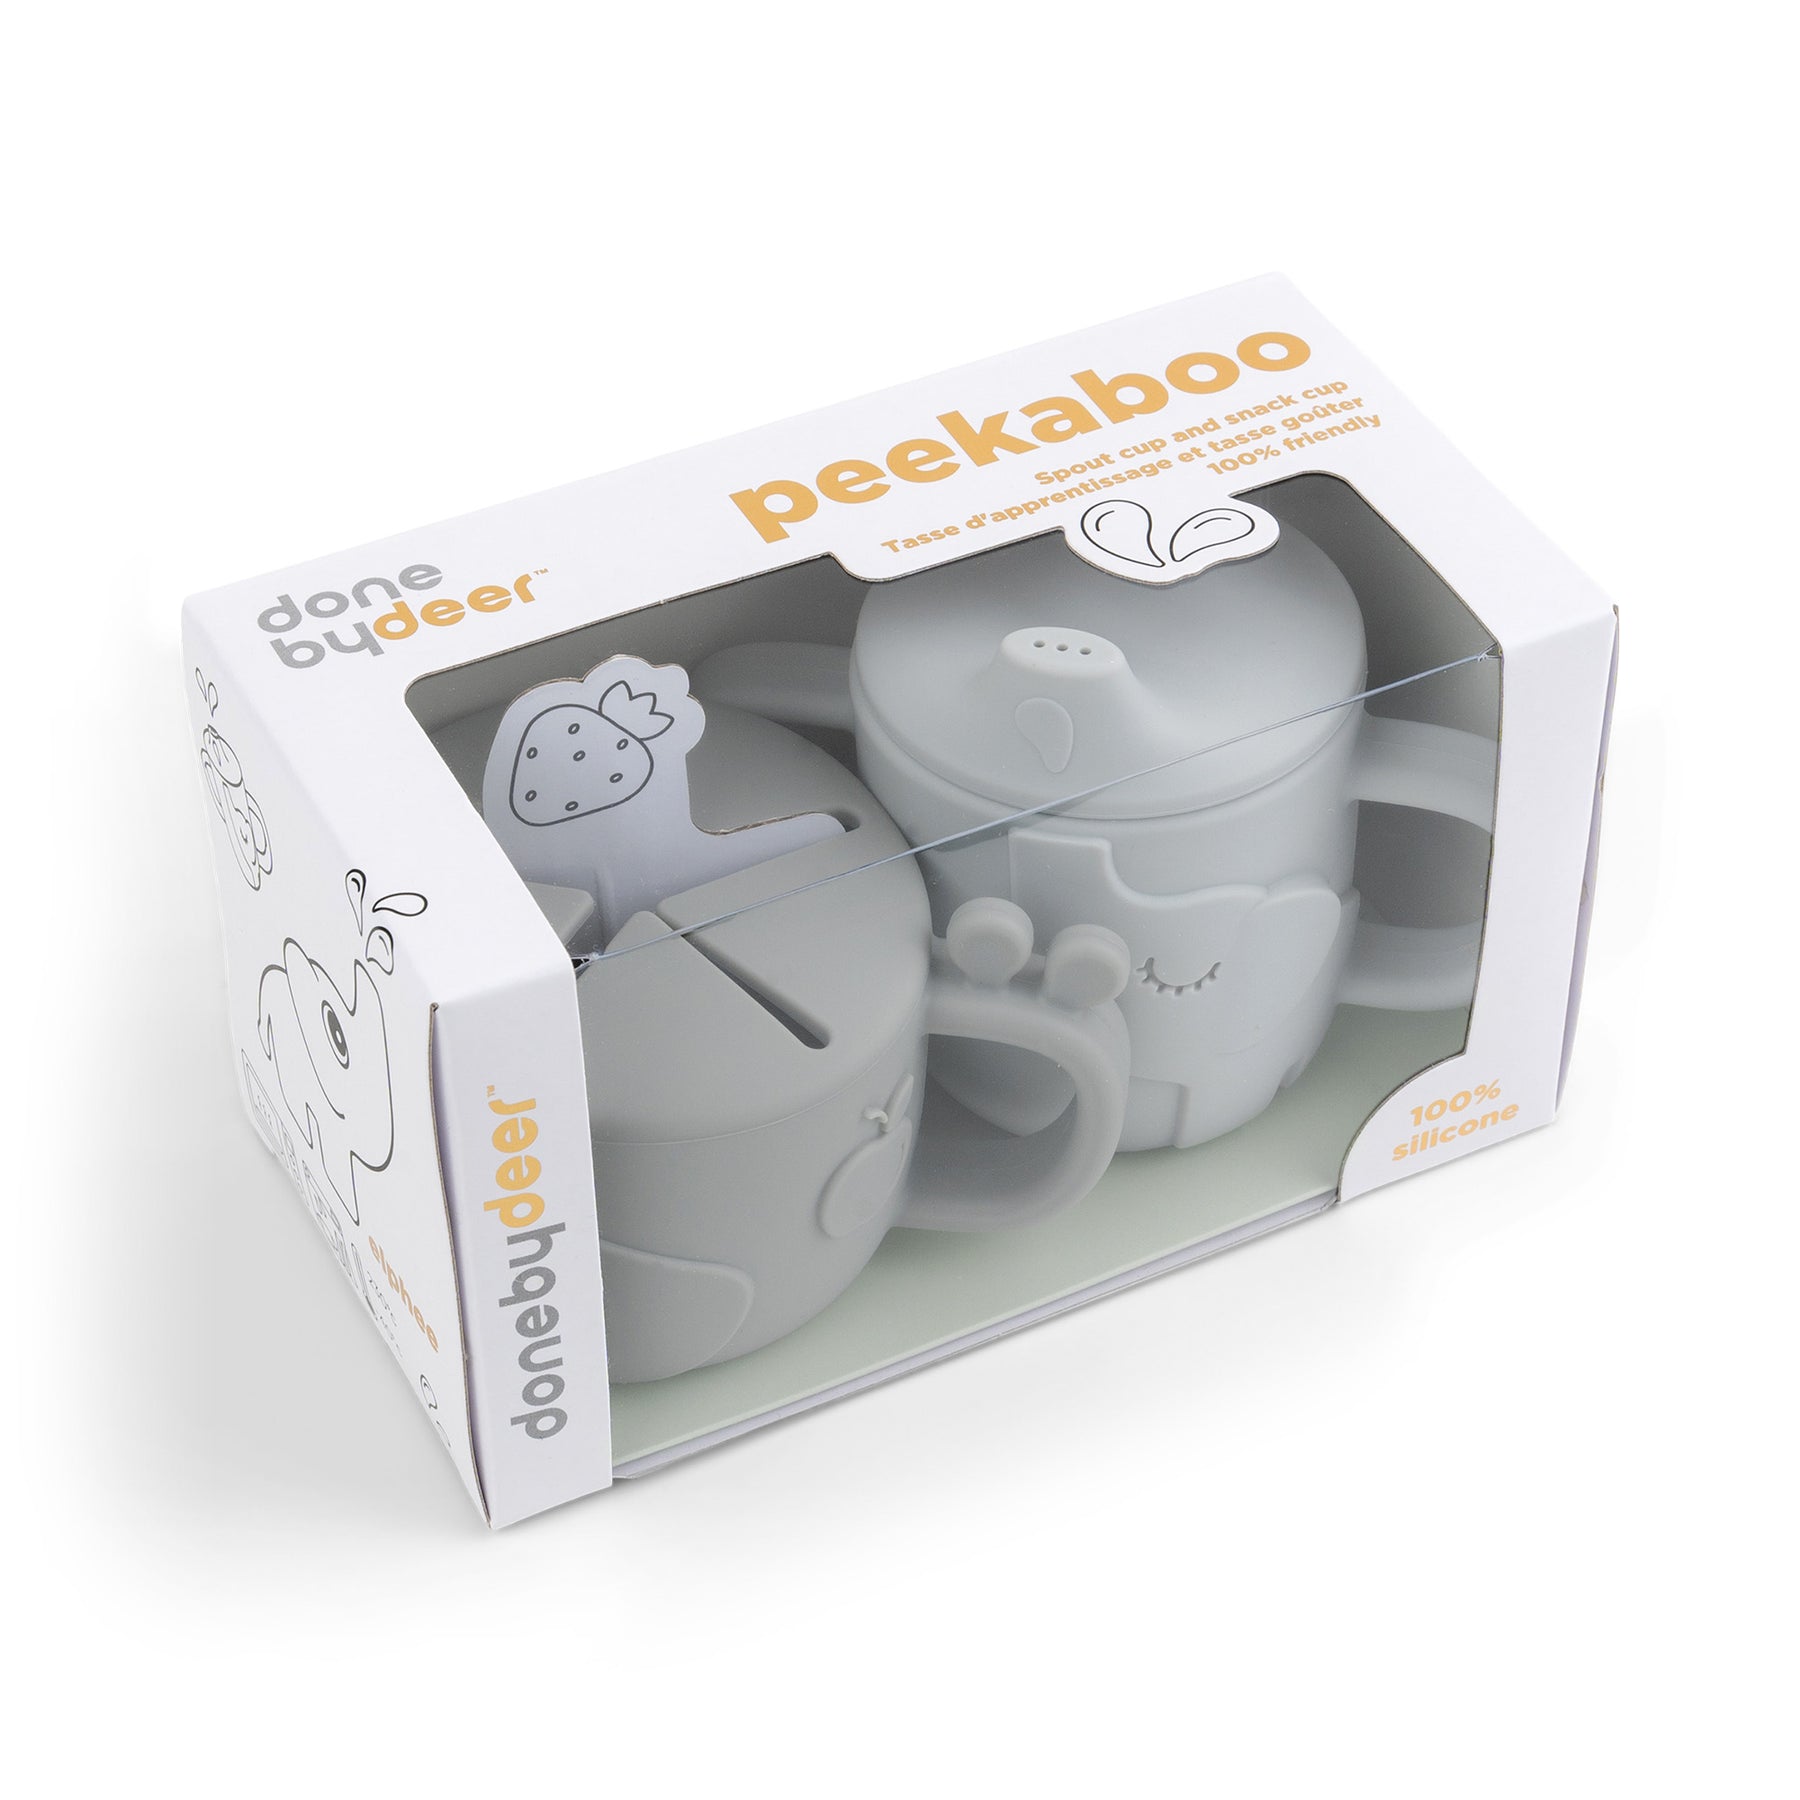 Peekaboo spout/snack cup set - Deer friends - Grey - Packaging